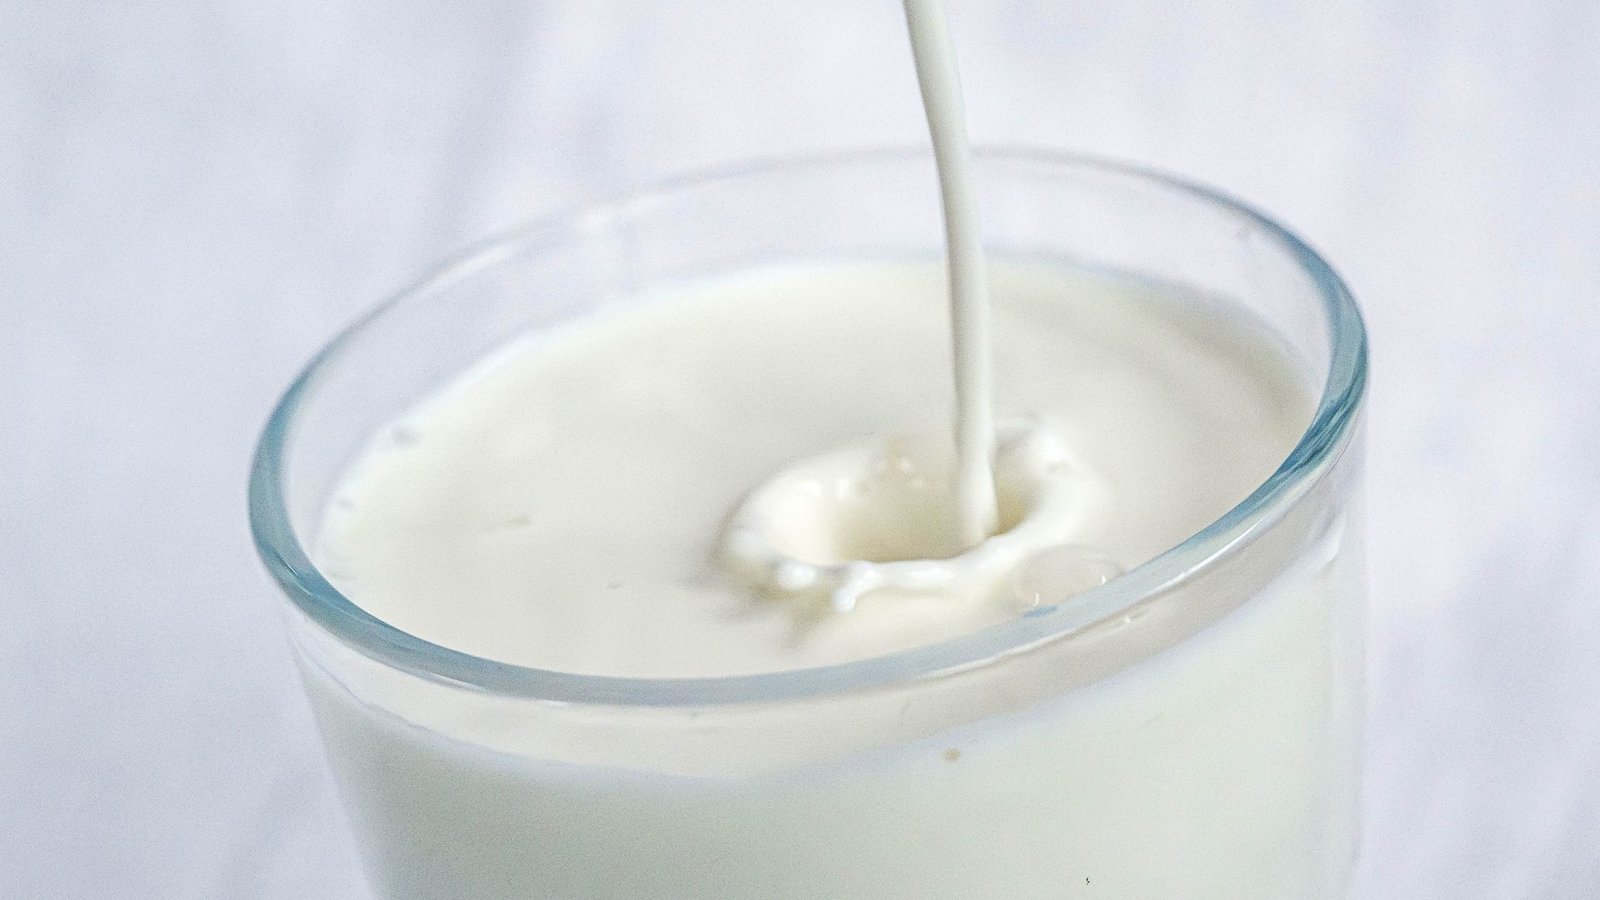 Die WHO empfiehlt pasteurisierte Milch.Foto: dpa/Sina Schuldt